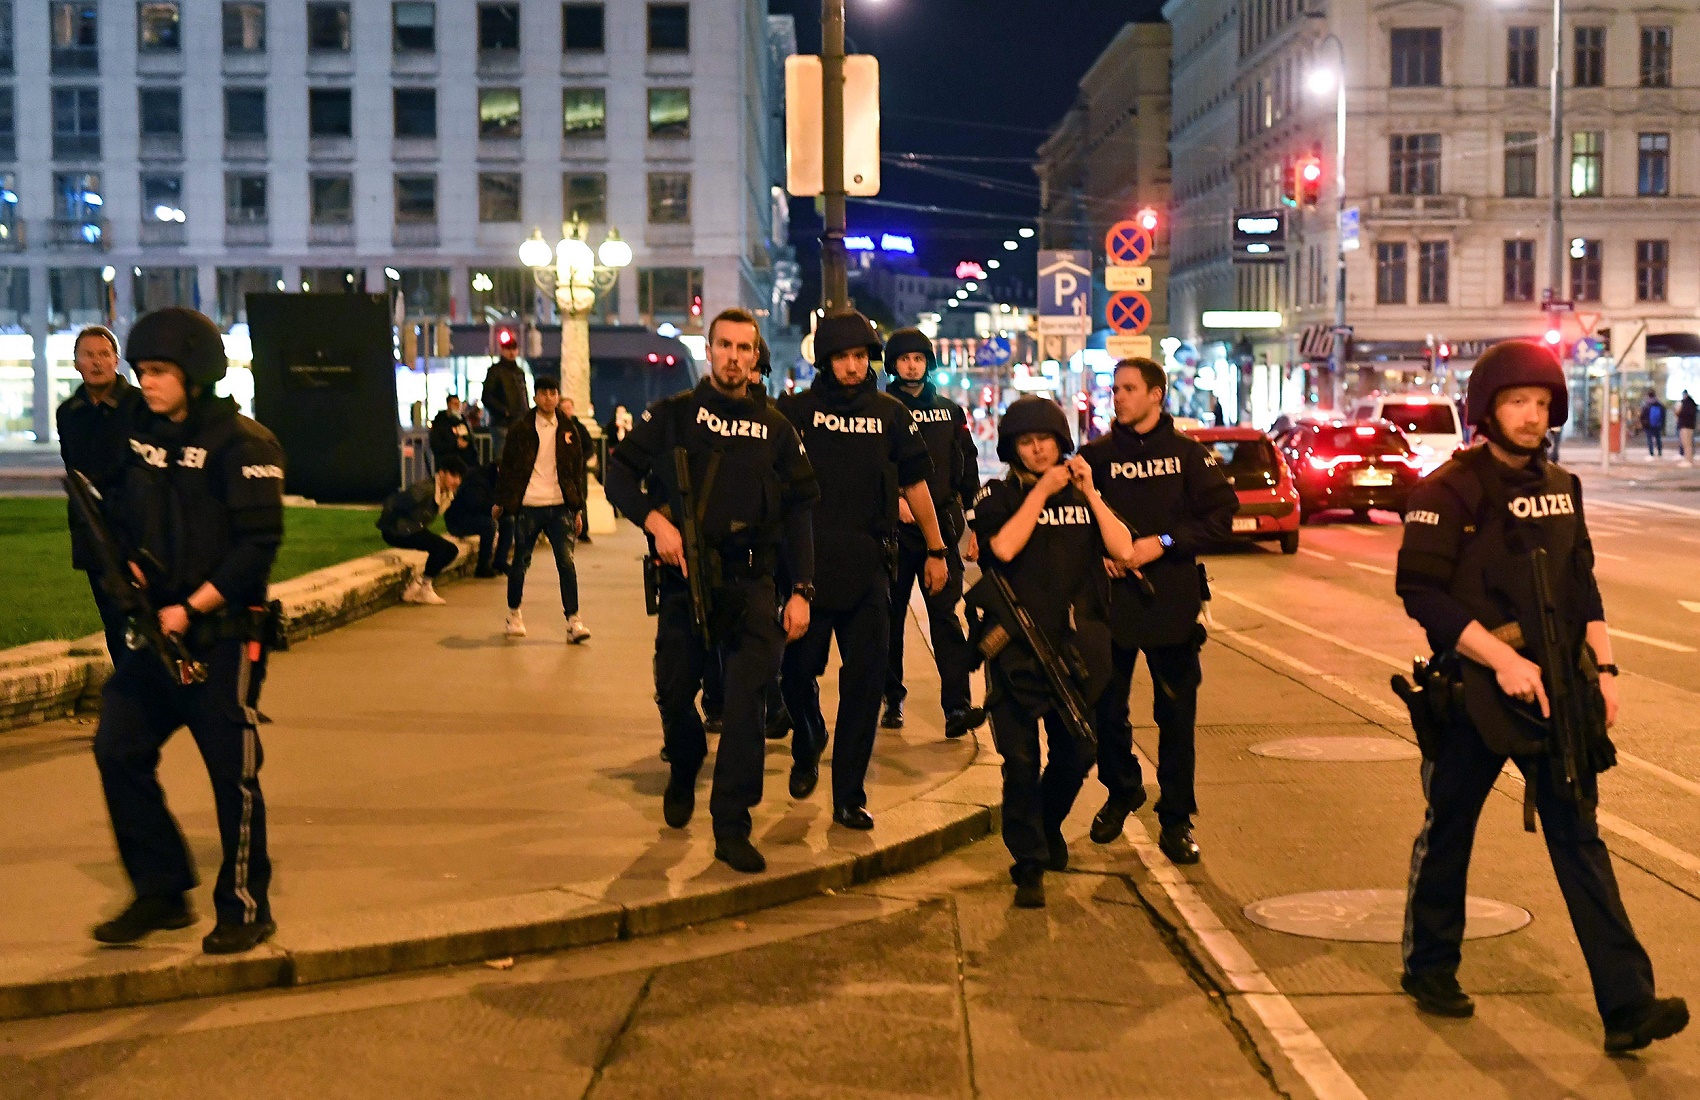 Центр Вены был атакован вооруженными террористами